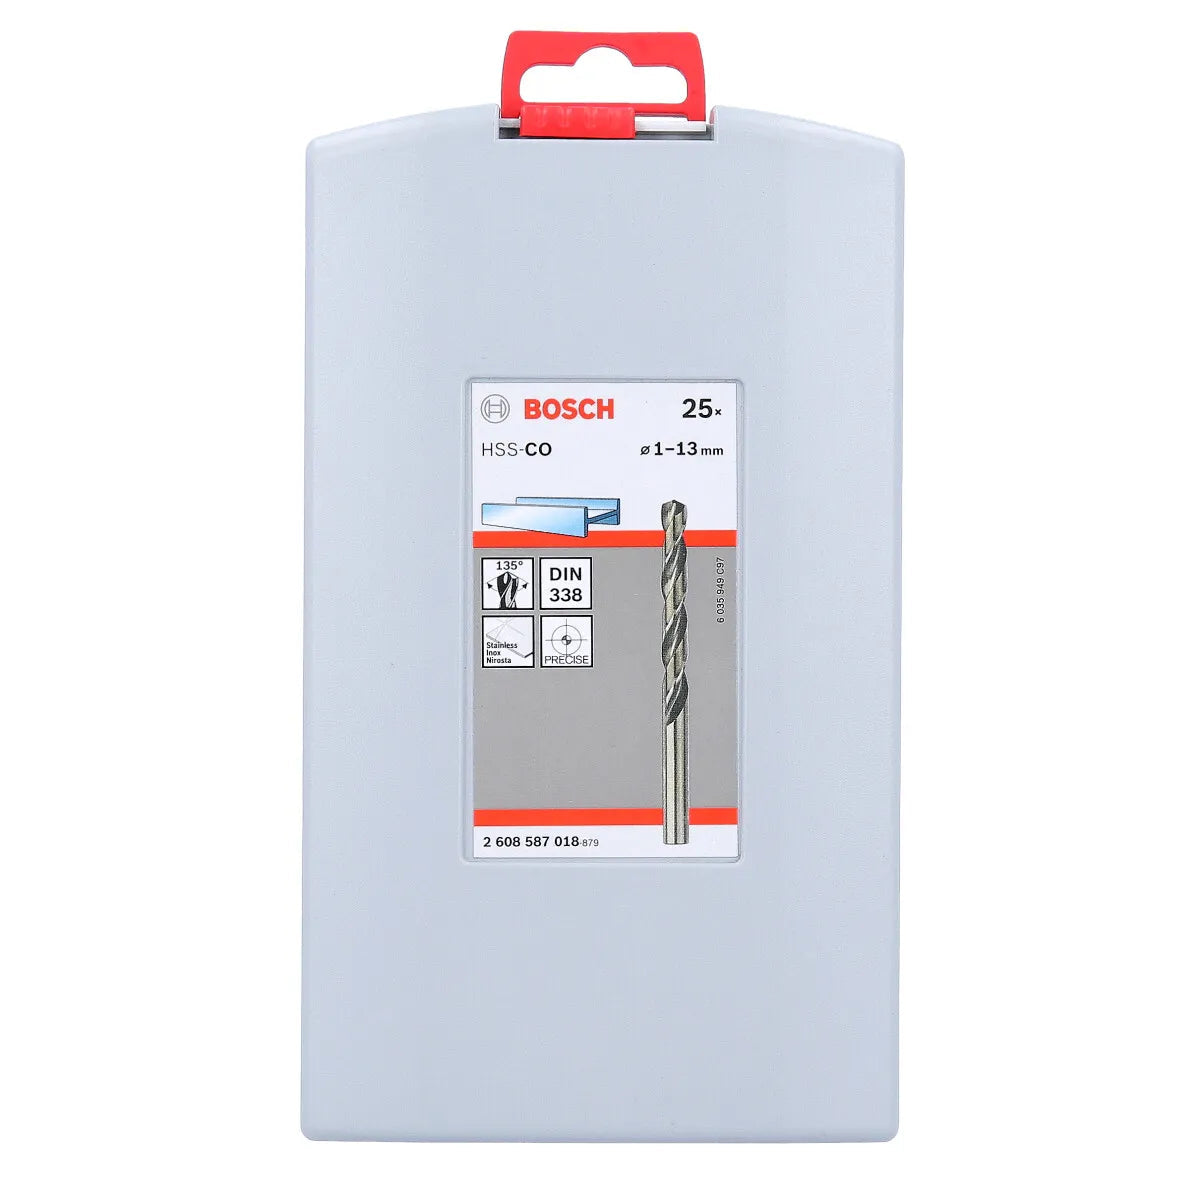 Bosch ProBox set HSS-Co, DIN 338, 1-13 mm, 25 pc 2608587018 Power Tool Services